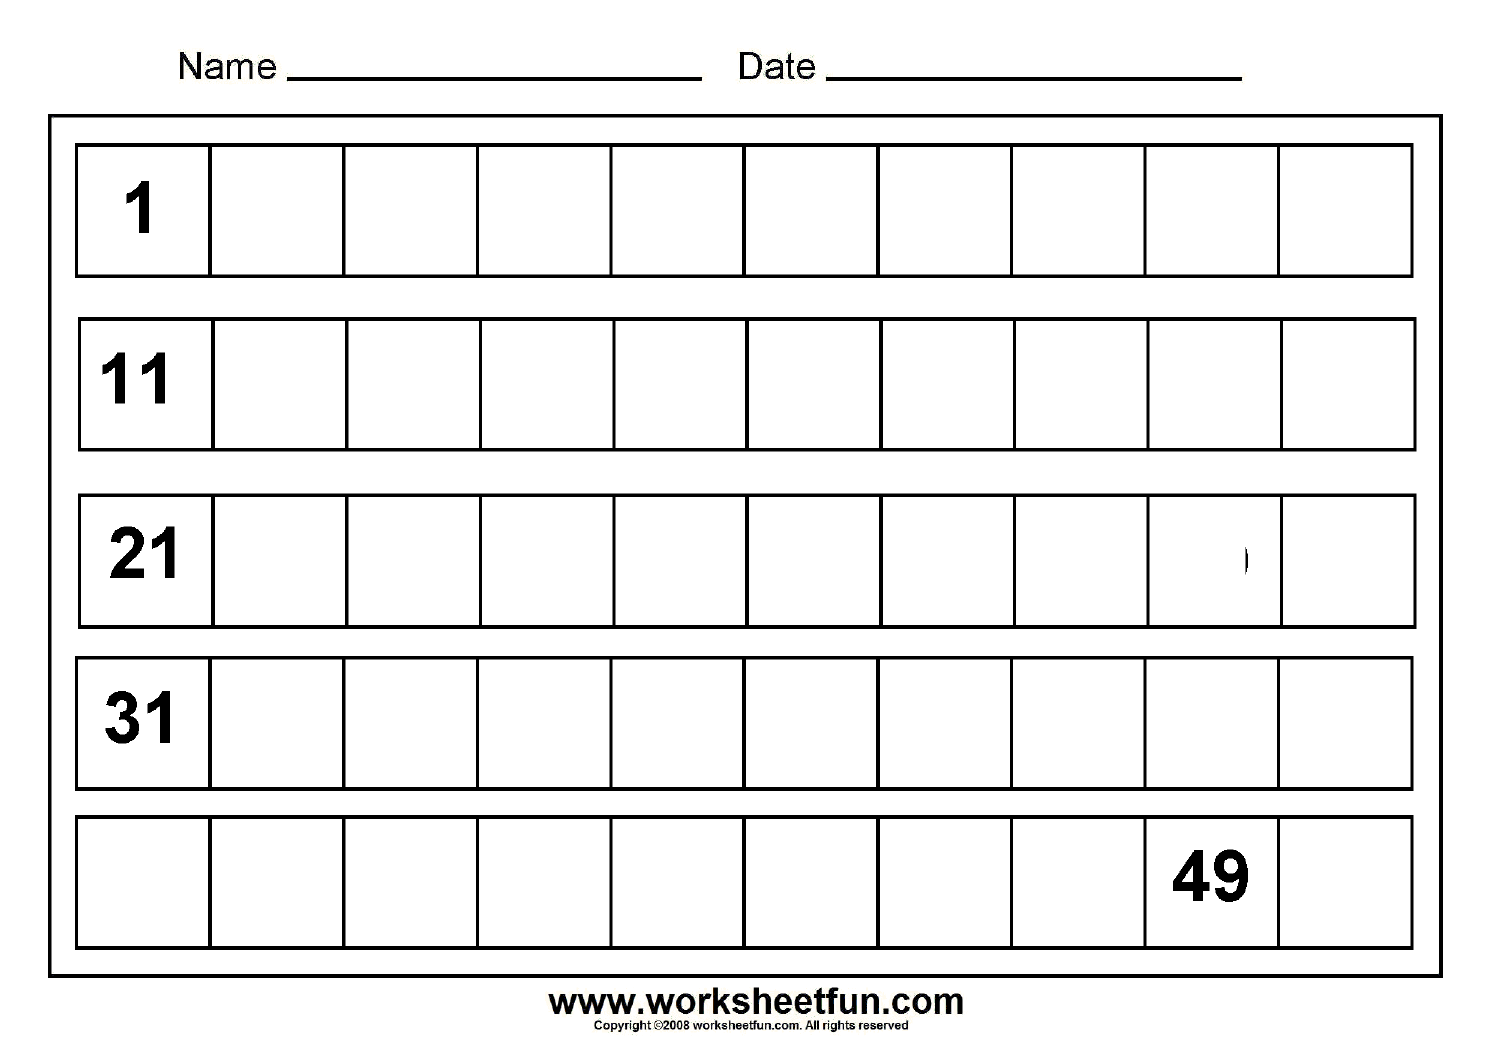 missing-numbers-1-to-50-8-worksheets-free-printable-worksheets-worksheetfun